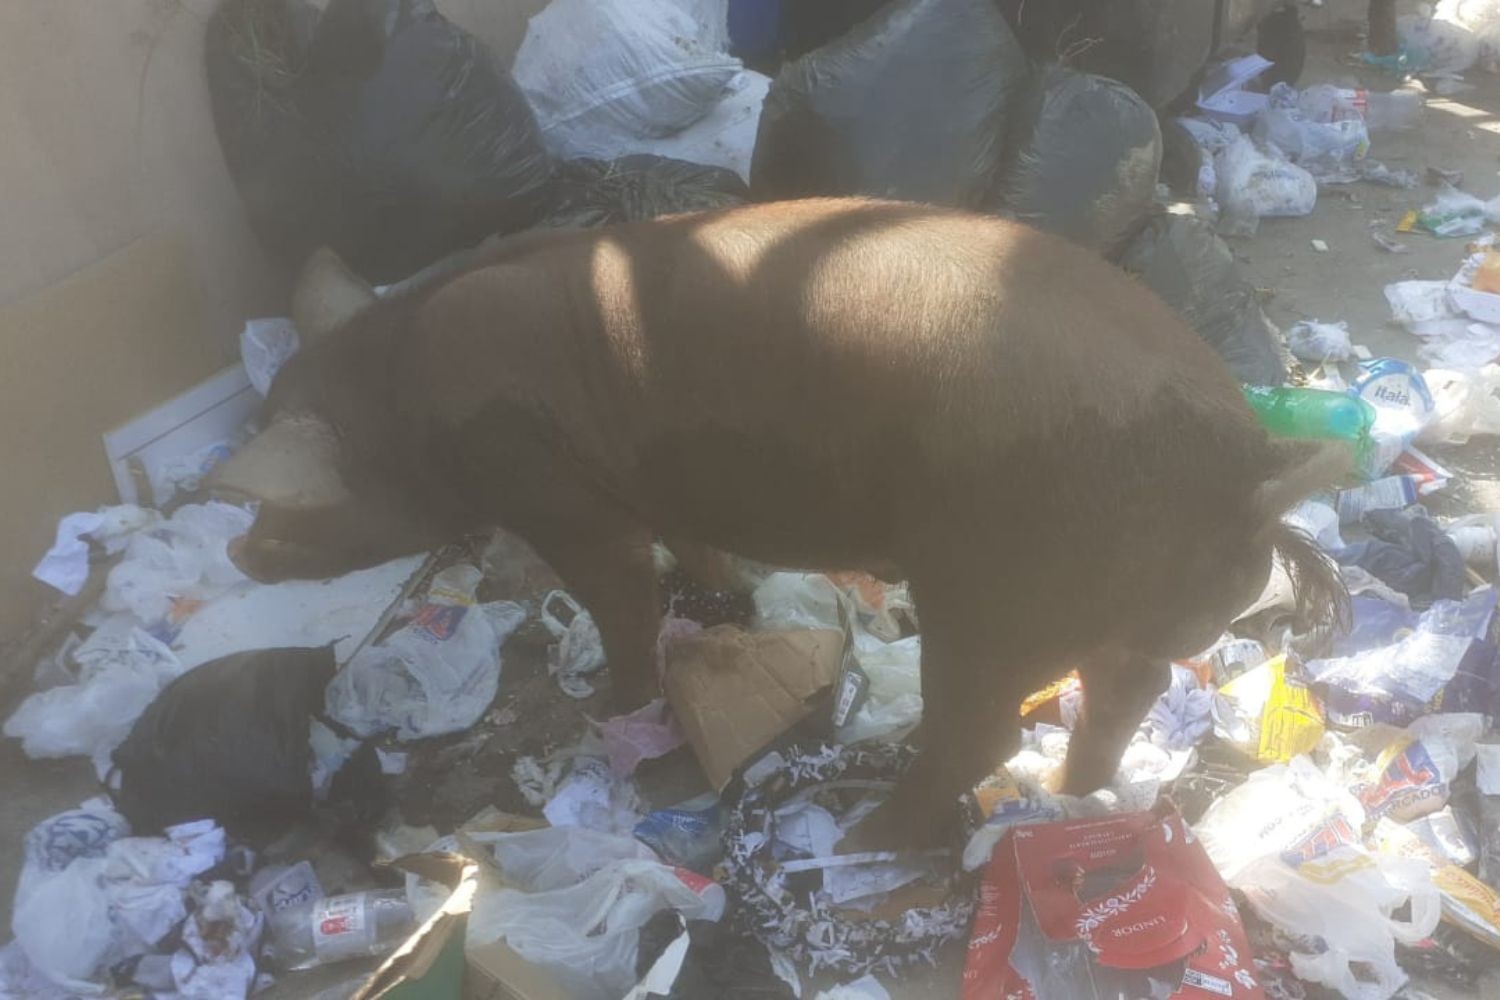 Porcos de grande porte são flagrados comendo lixo em morro de Santos, SP; VÍDEO